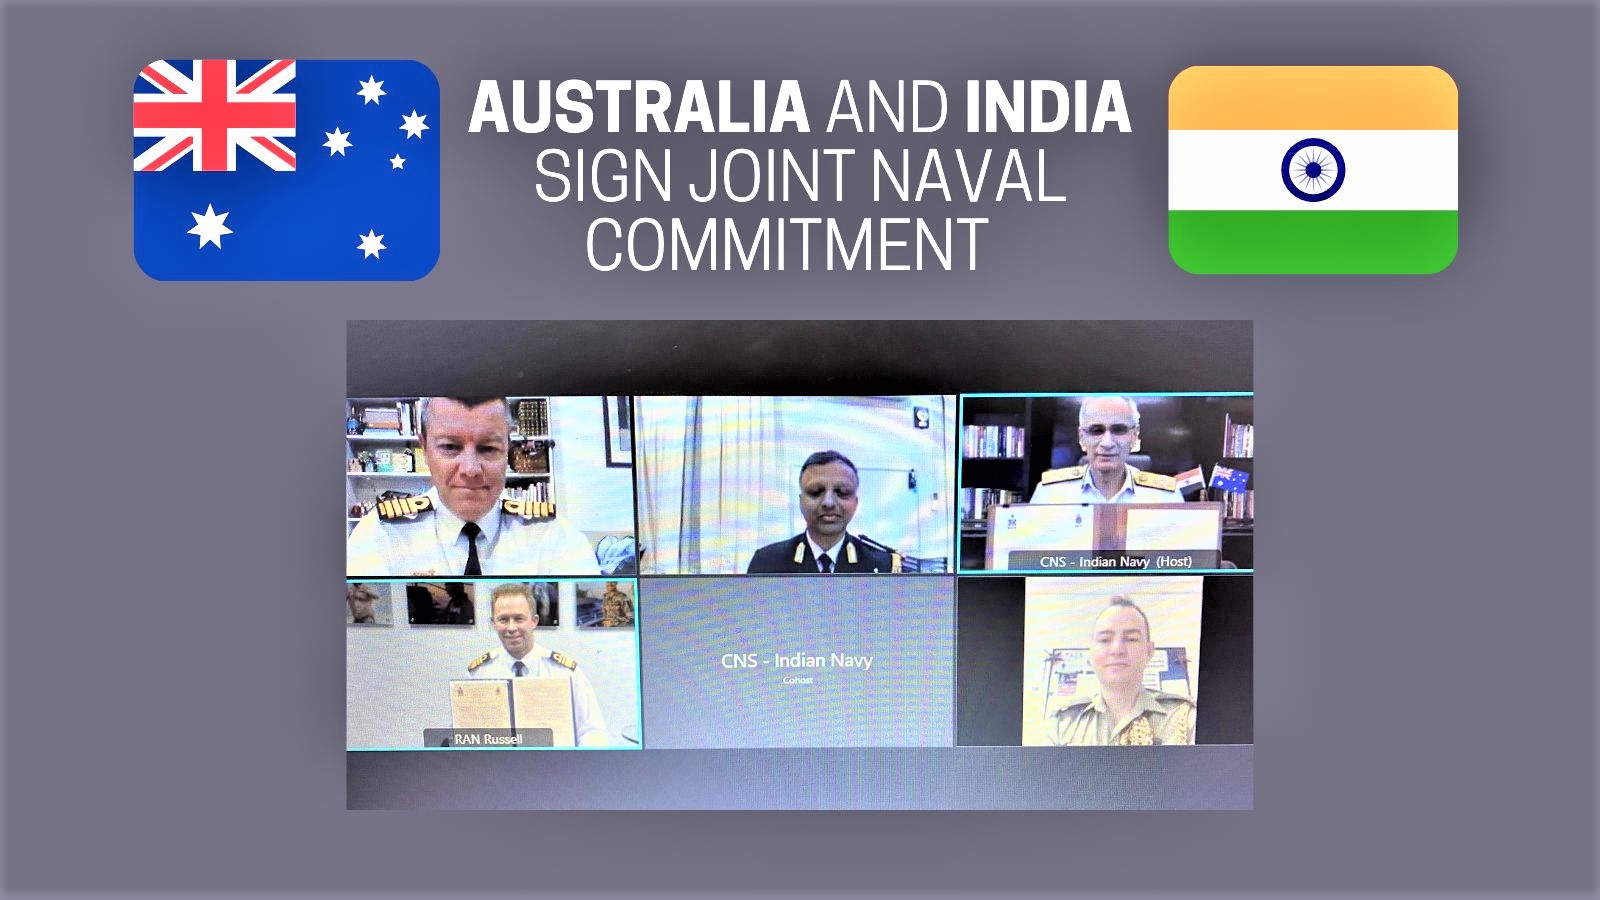 भारत-ऑस्ट्रेलिया ने नौसैनिक संबंधों को बढ़ावा देने के लिए किया समझौता